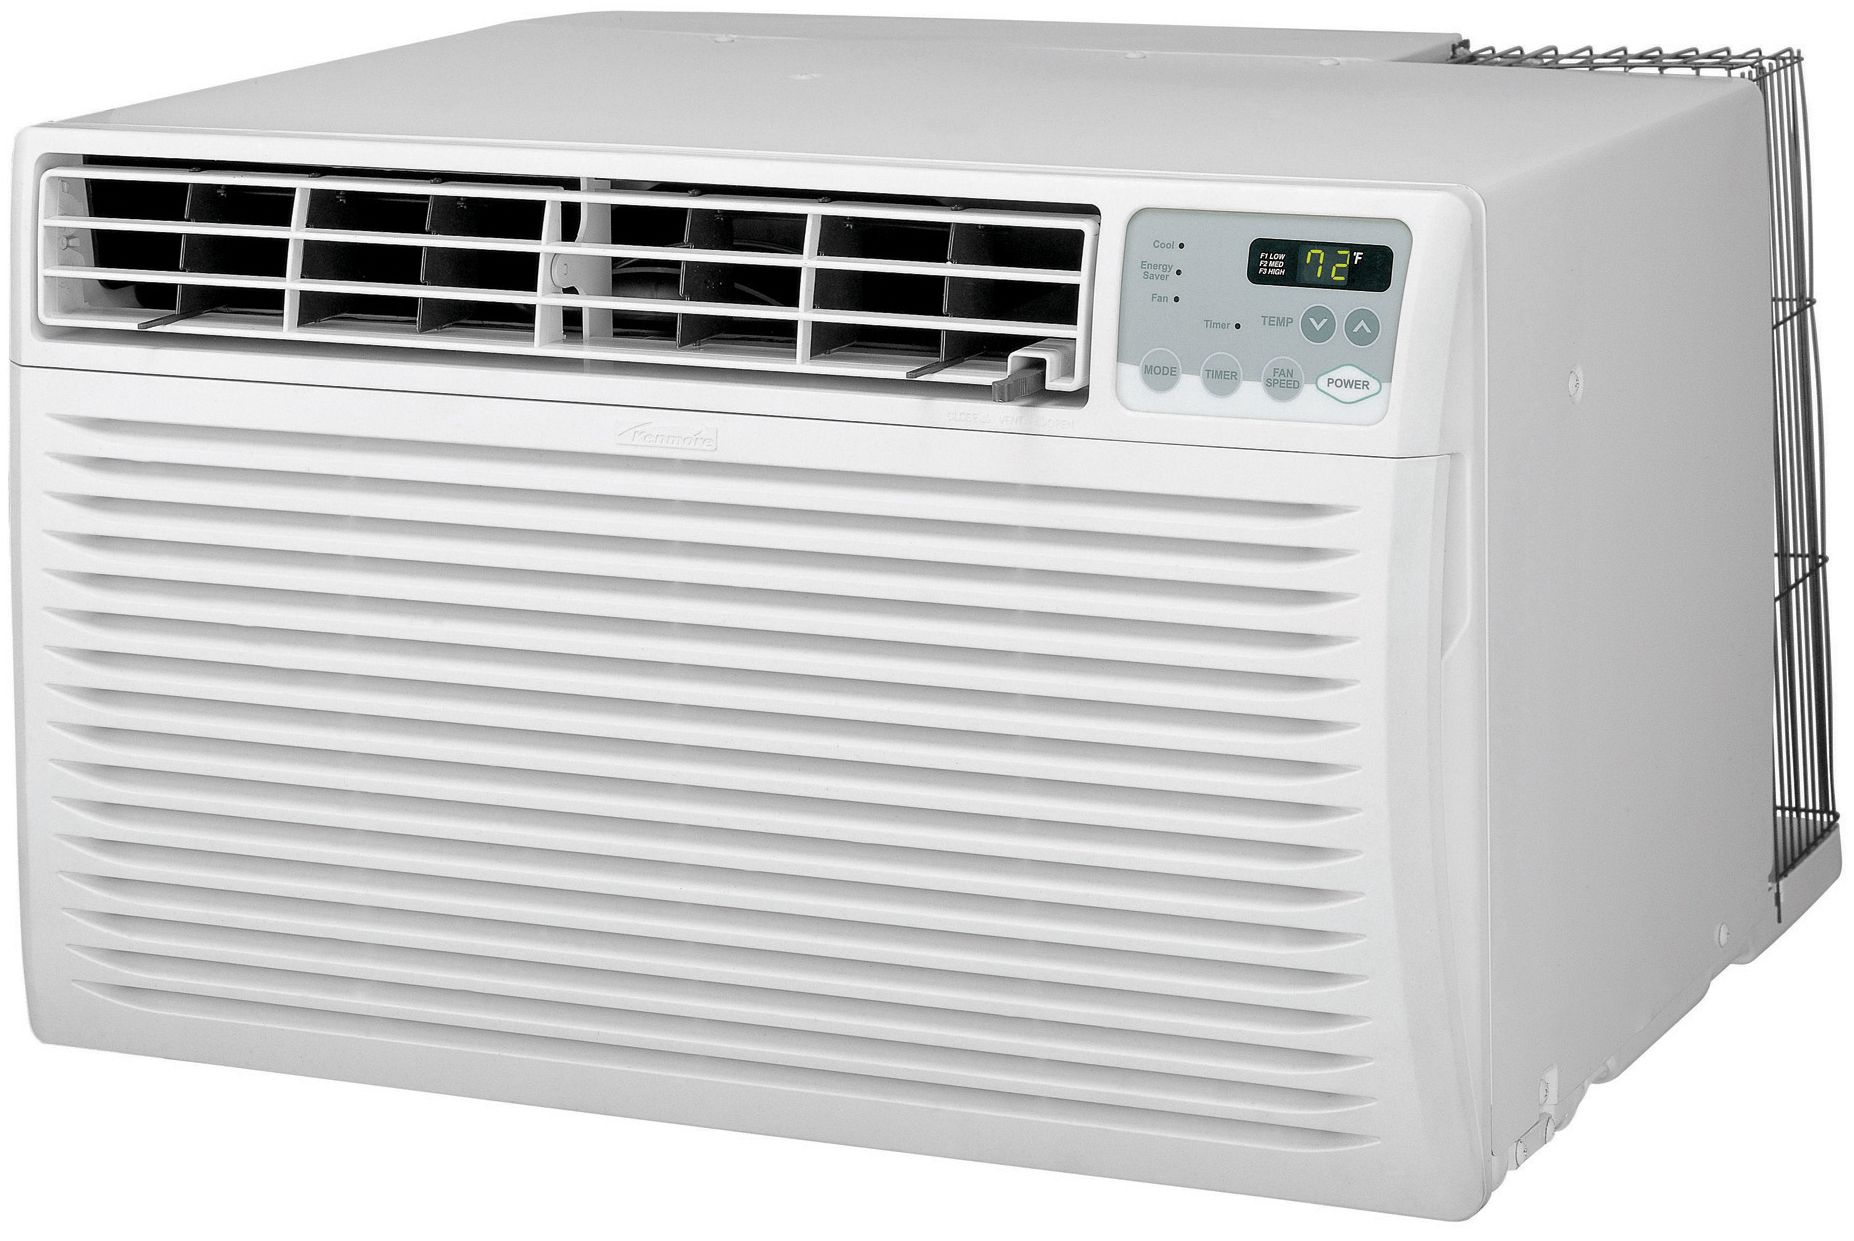 Air Conditioner logo